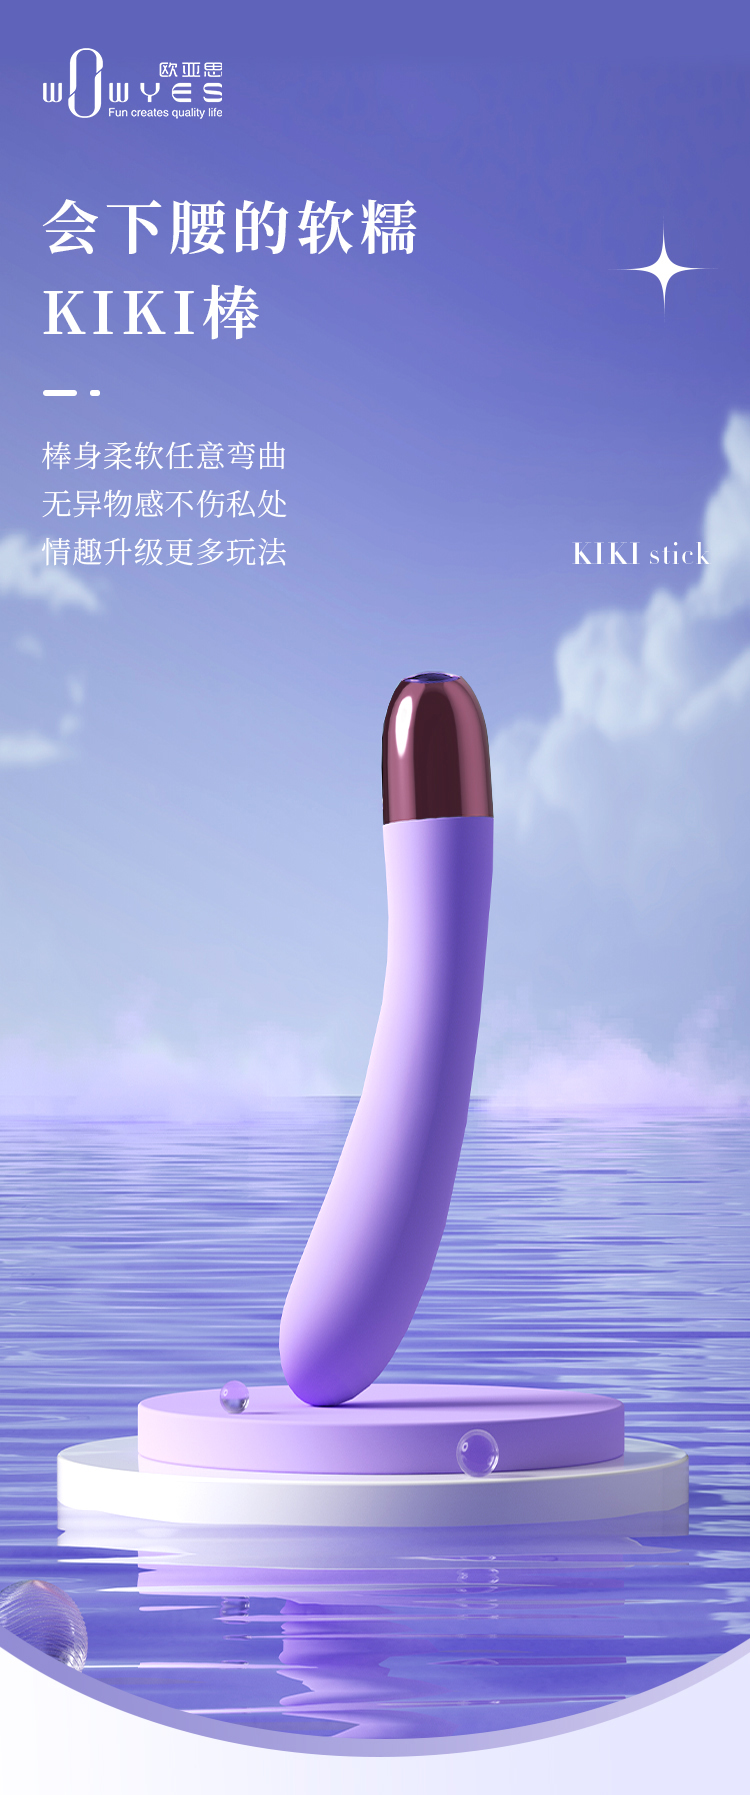 趣爱阁-情趣用品批发进货:欧亚思WOWYES KIKI-1代震动棒(紫)